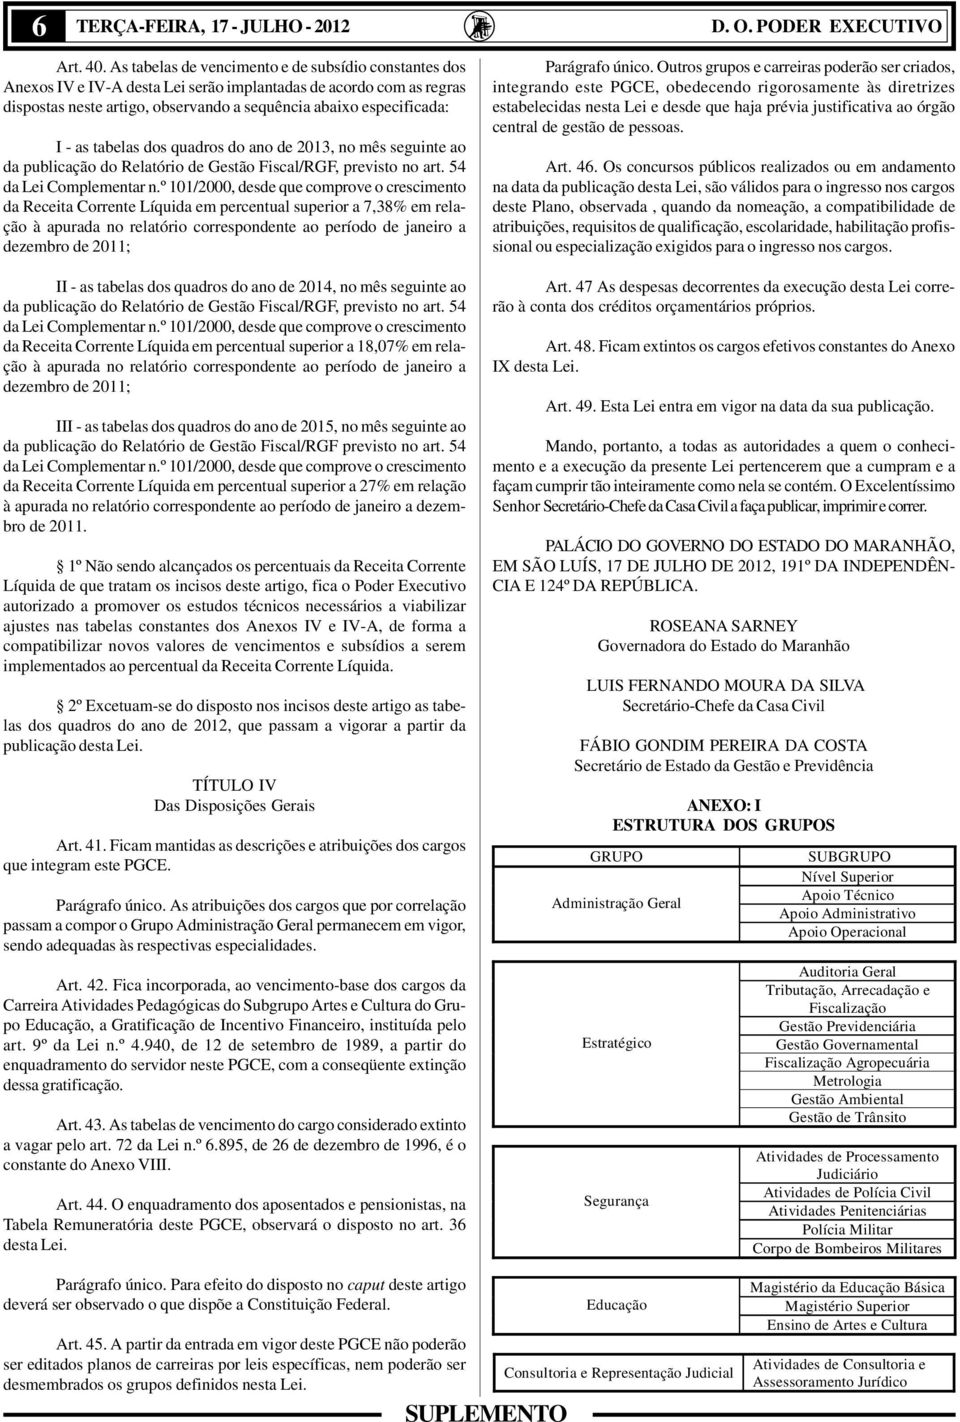 tabelas dos quadros do ano de 2013, no mês seguinte ao da publicação do Relatório de Gestão Fiscal/RGF, previsto no art. 54 da Lei omplementar n.